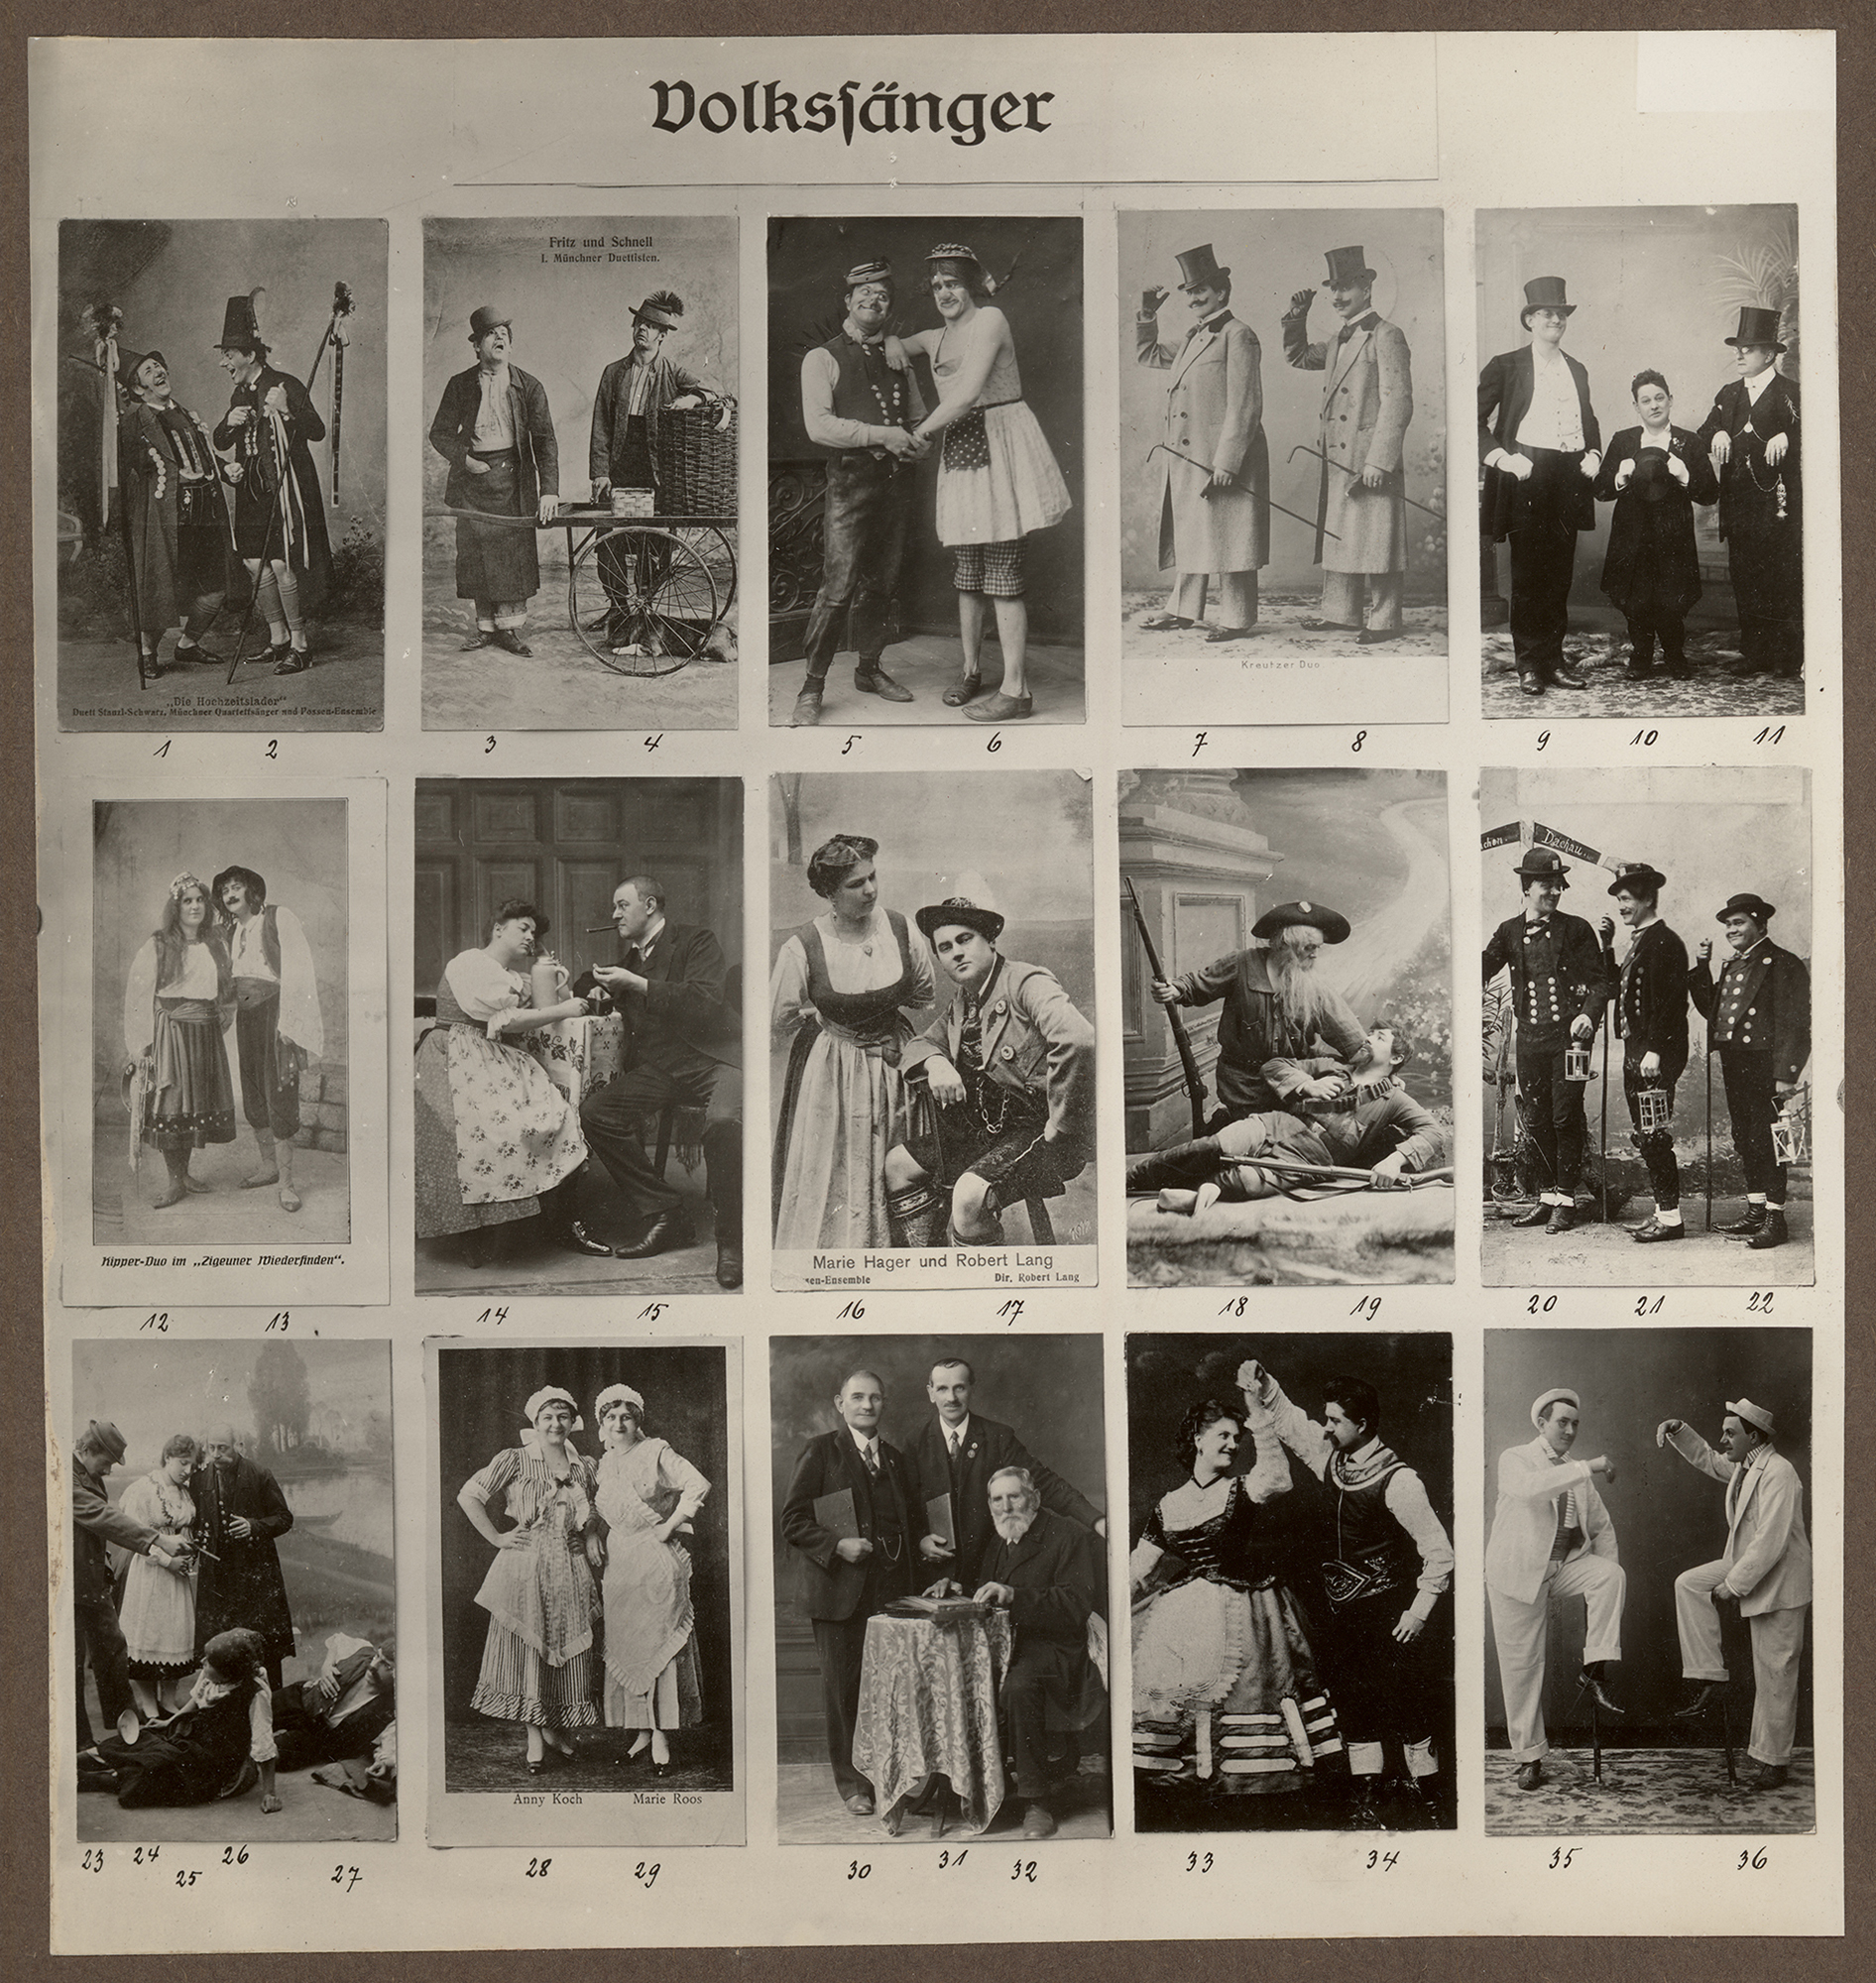 Liesl Karlstadt, Ludwig Greiner, Foto Hilbinger & Co, München, Fritz Witzig, Atelier für Photographie, München, Georg Pettendorfer, Karl Valentins Volkssängertafeln, Tafel 52, Volkssänger-Gesellschaften (Duette), 1927